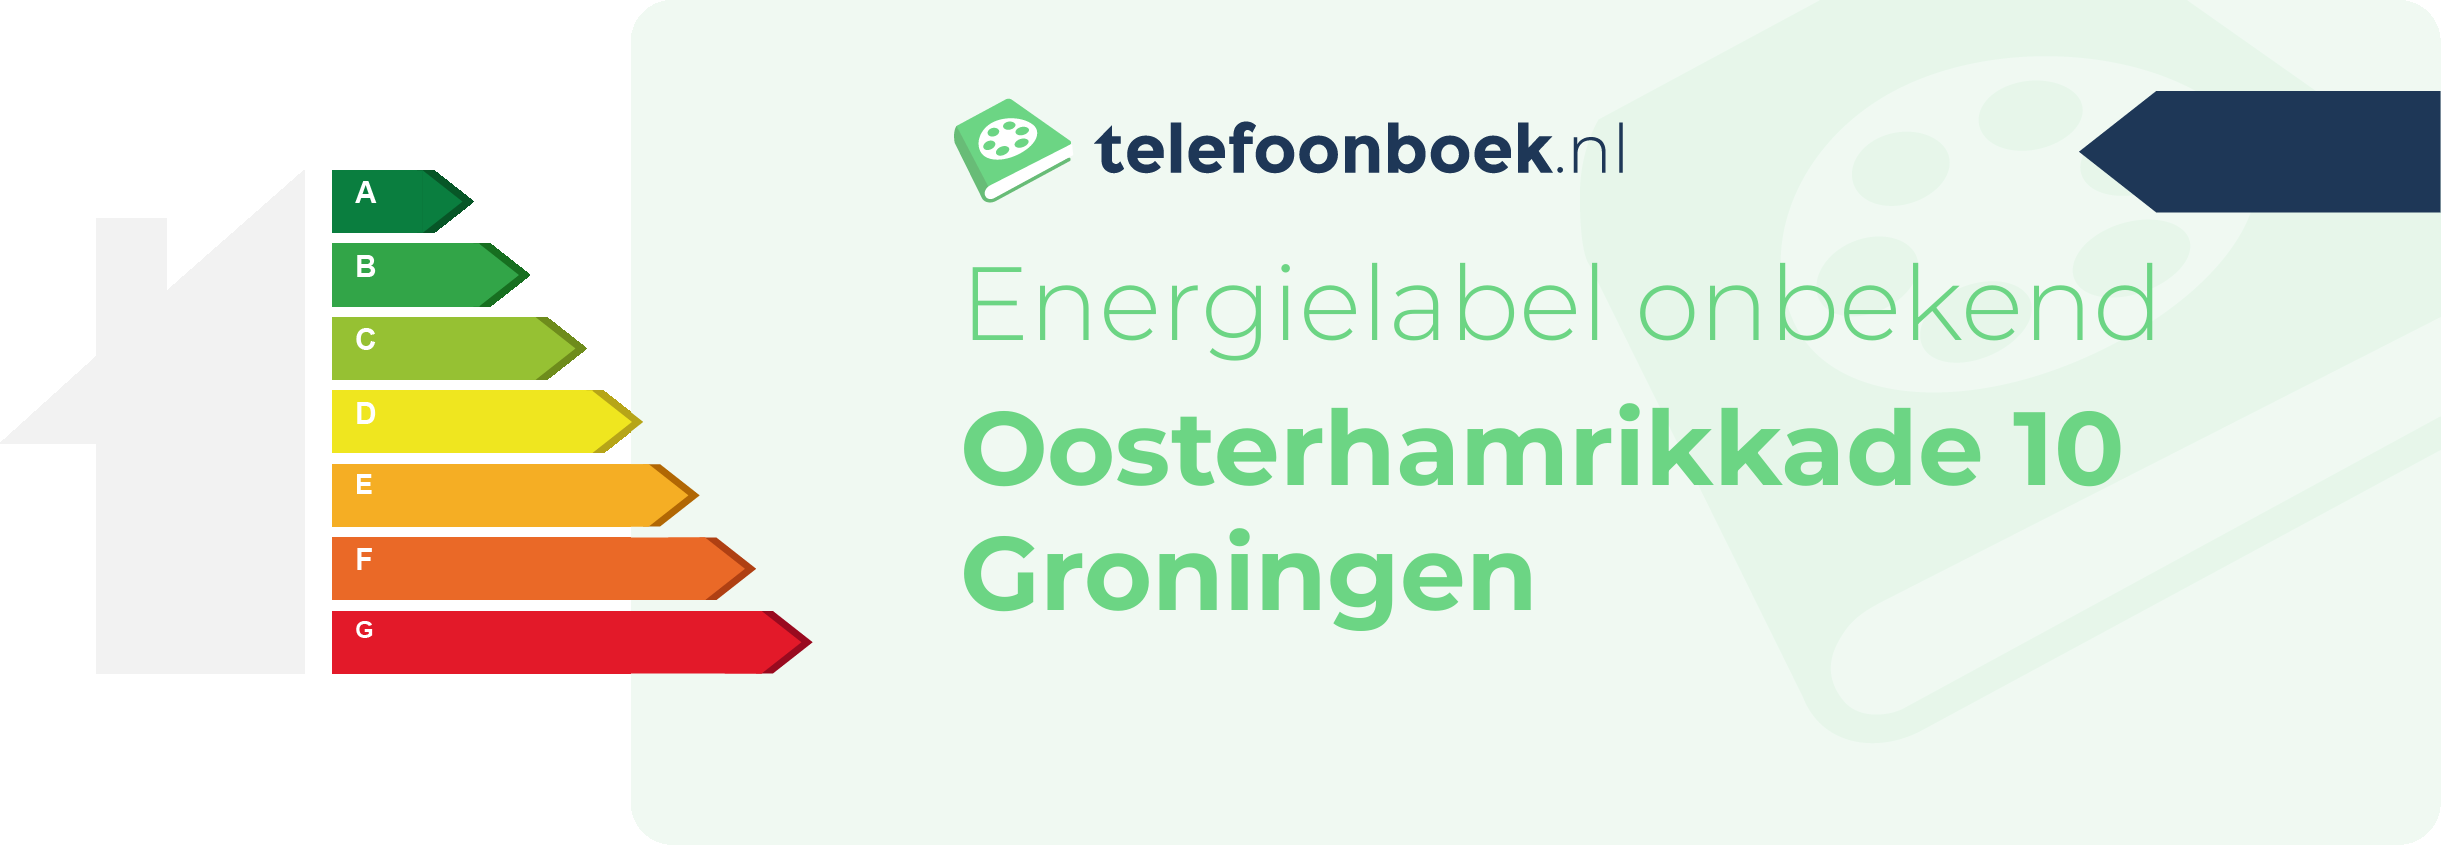 Energielabel Oosterhamrikkade 10 Groningen